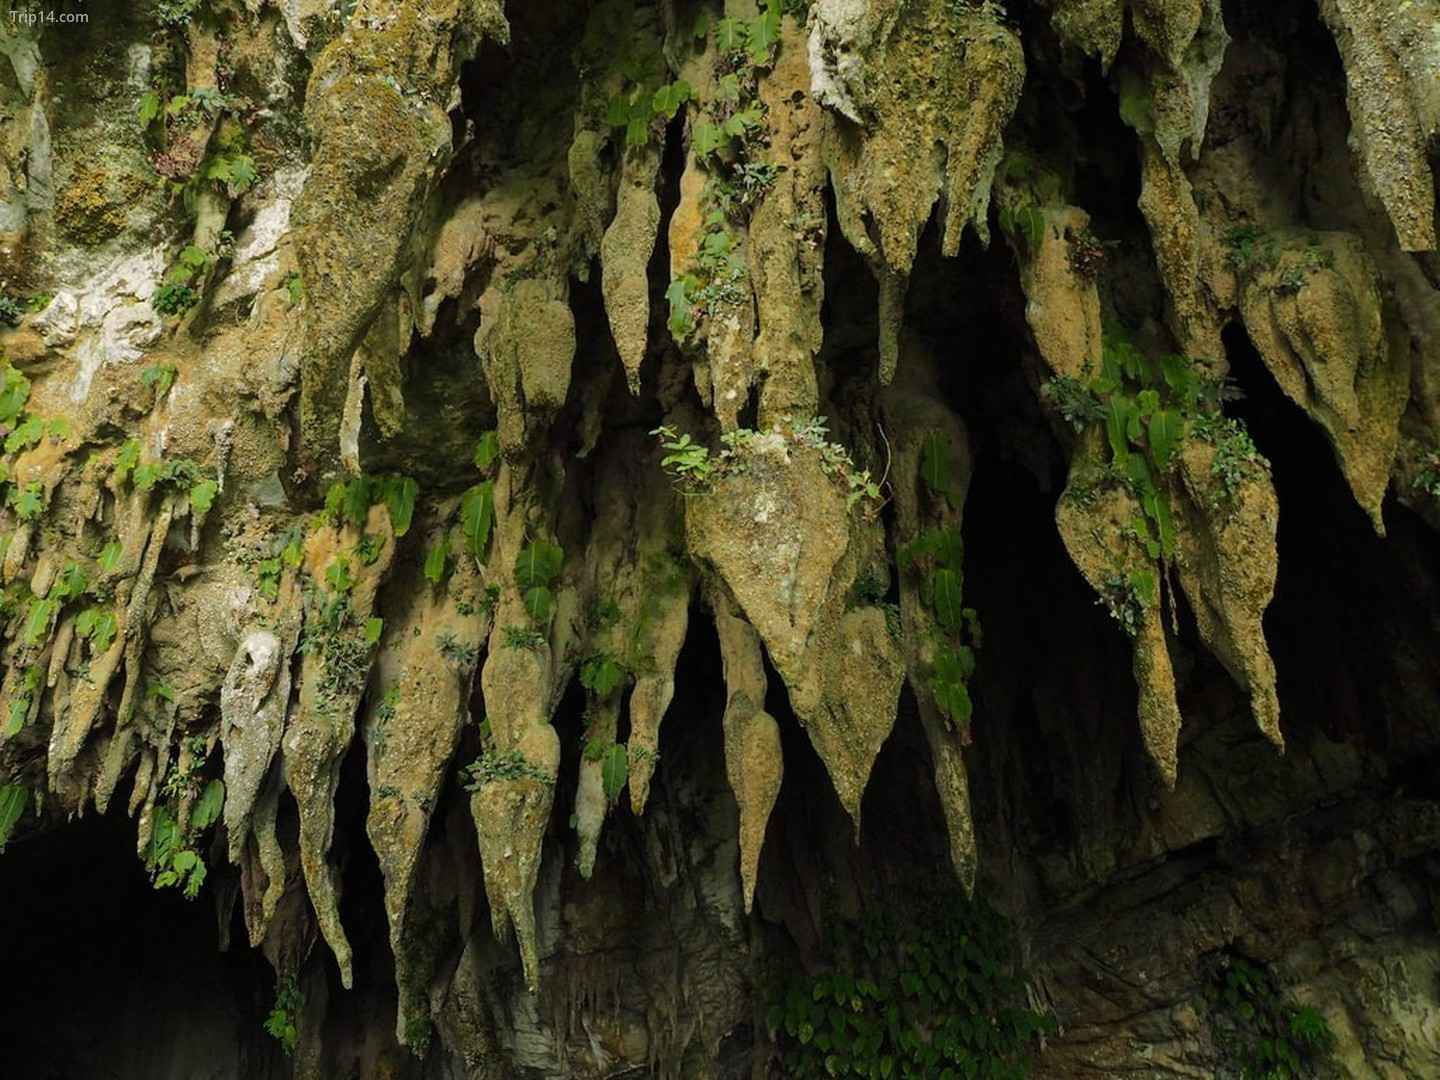  Các hình thành đá nhỏ giọt tại Vườn quốc gia Gunung Mulu, Sarawak   |   